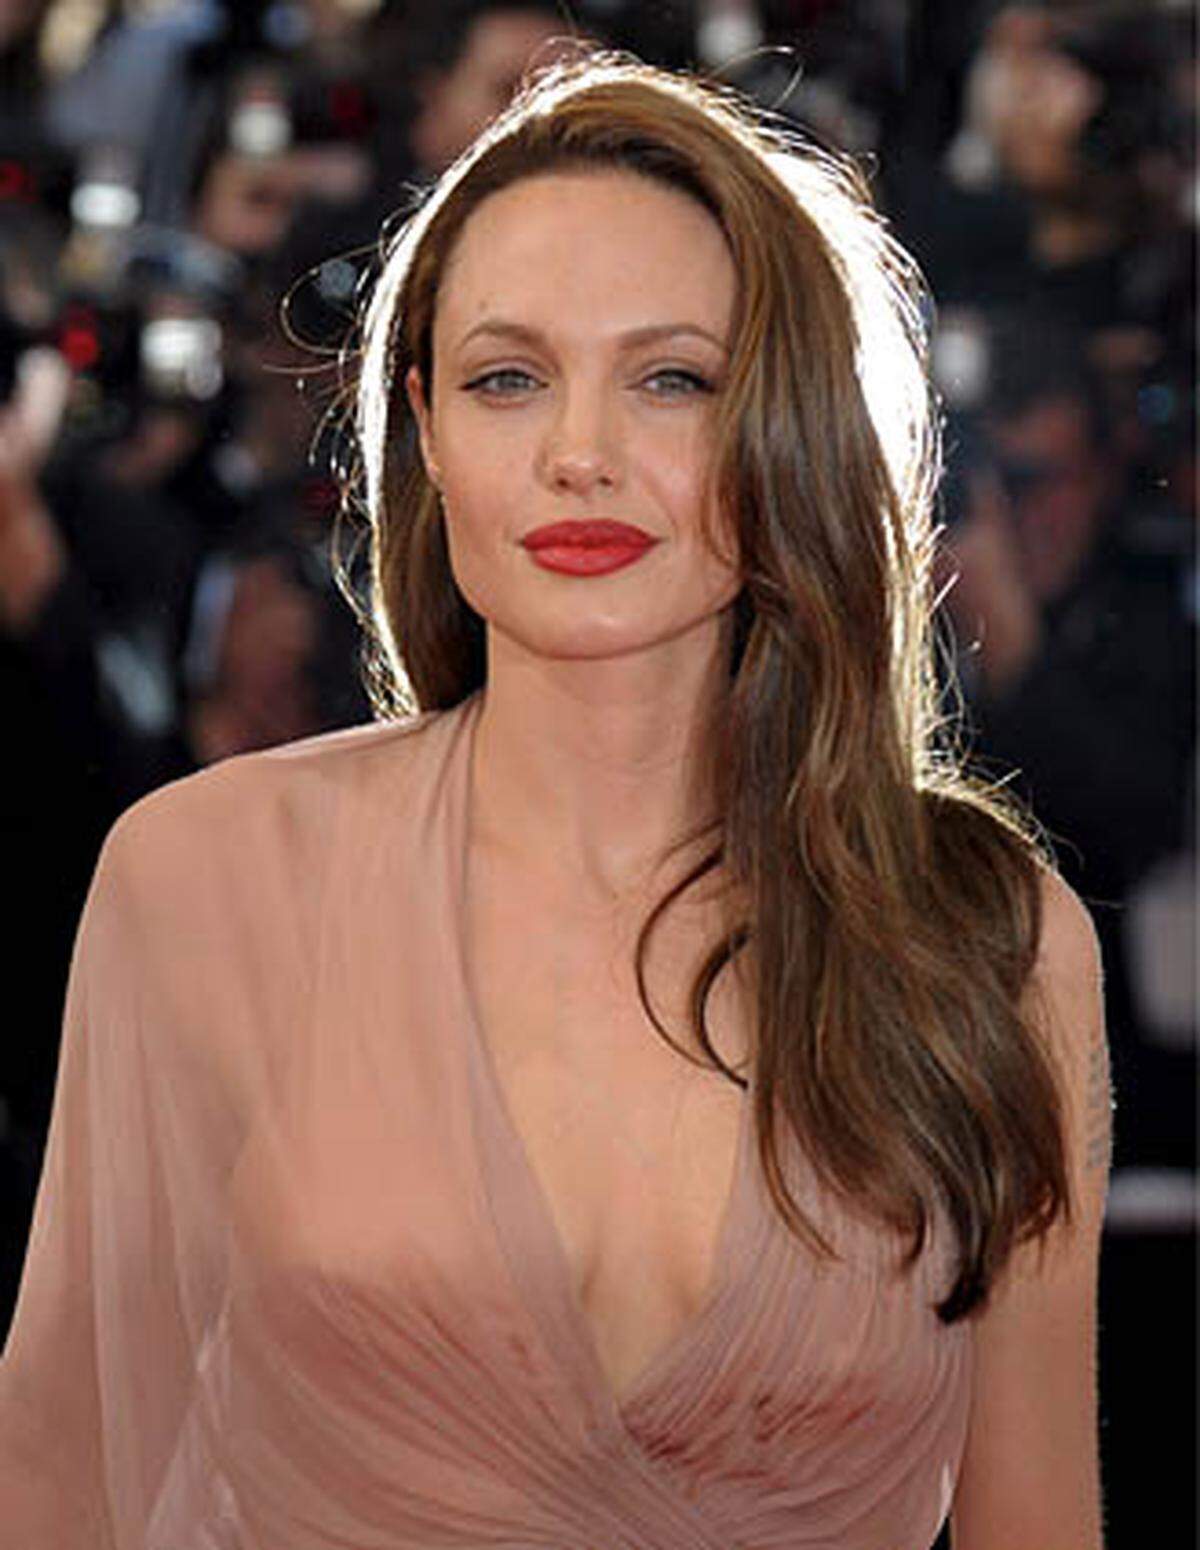 Hollywoodstar Angelina Jolie kehrt schlagkräftig auf die Leinwand zurück. Nach einem längeren Hin und Her mit wechselnder Besetzung, Drehbüchern und Regisseuren ist Agententhriller "Salt" nun auf Kurs. Darin spielt Jolie eine CIA-Agentin, die beschuldigt wird, ein russischer Schläfer zu sein, der einen Anschlag auf den US-Präsidenten plant.  Im Sommer 2008 hatte Jolie anstelle von Tom Cruise die Agentenrolle in dem geplanten Spionagethriller übernommen, der damals noch "Edwin A. Salt" hieß. Drehbuch-Autor Kurt Wimmer änderte Namen und Geschlecht seiner Titelfigur. Phillip Noyce führt Regie.  Quelle: "Variety"